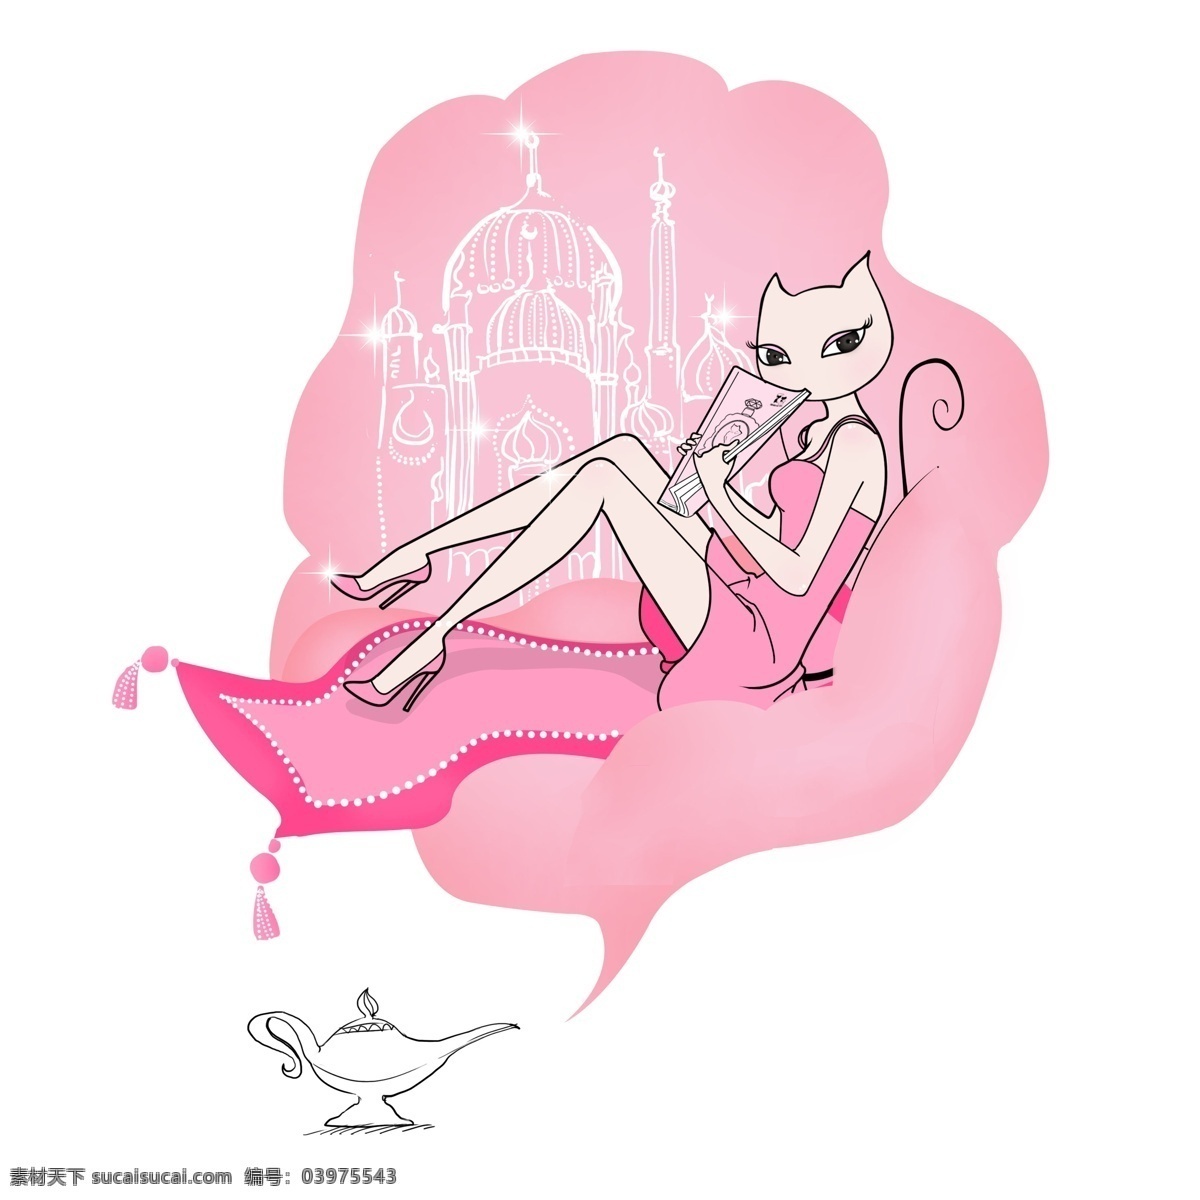 猫 年华 女郎 童话 系列 原创作品 猫样年华 猫女郎 童话系列 原创 品牌 插画 白色